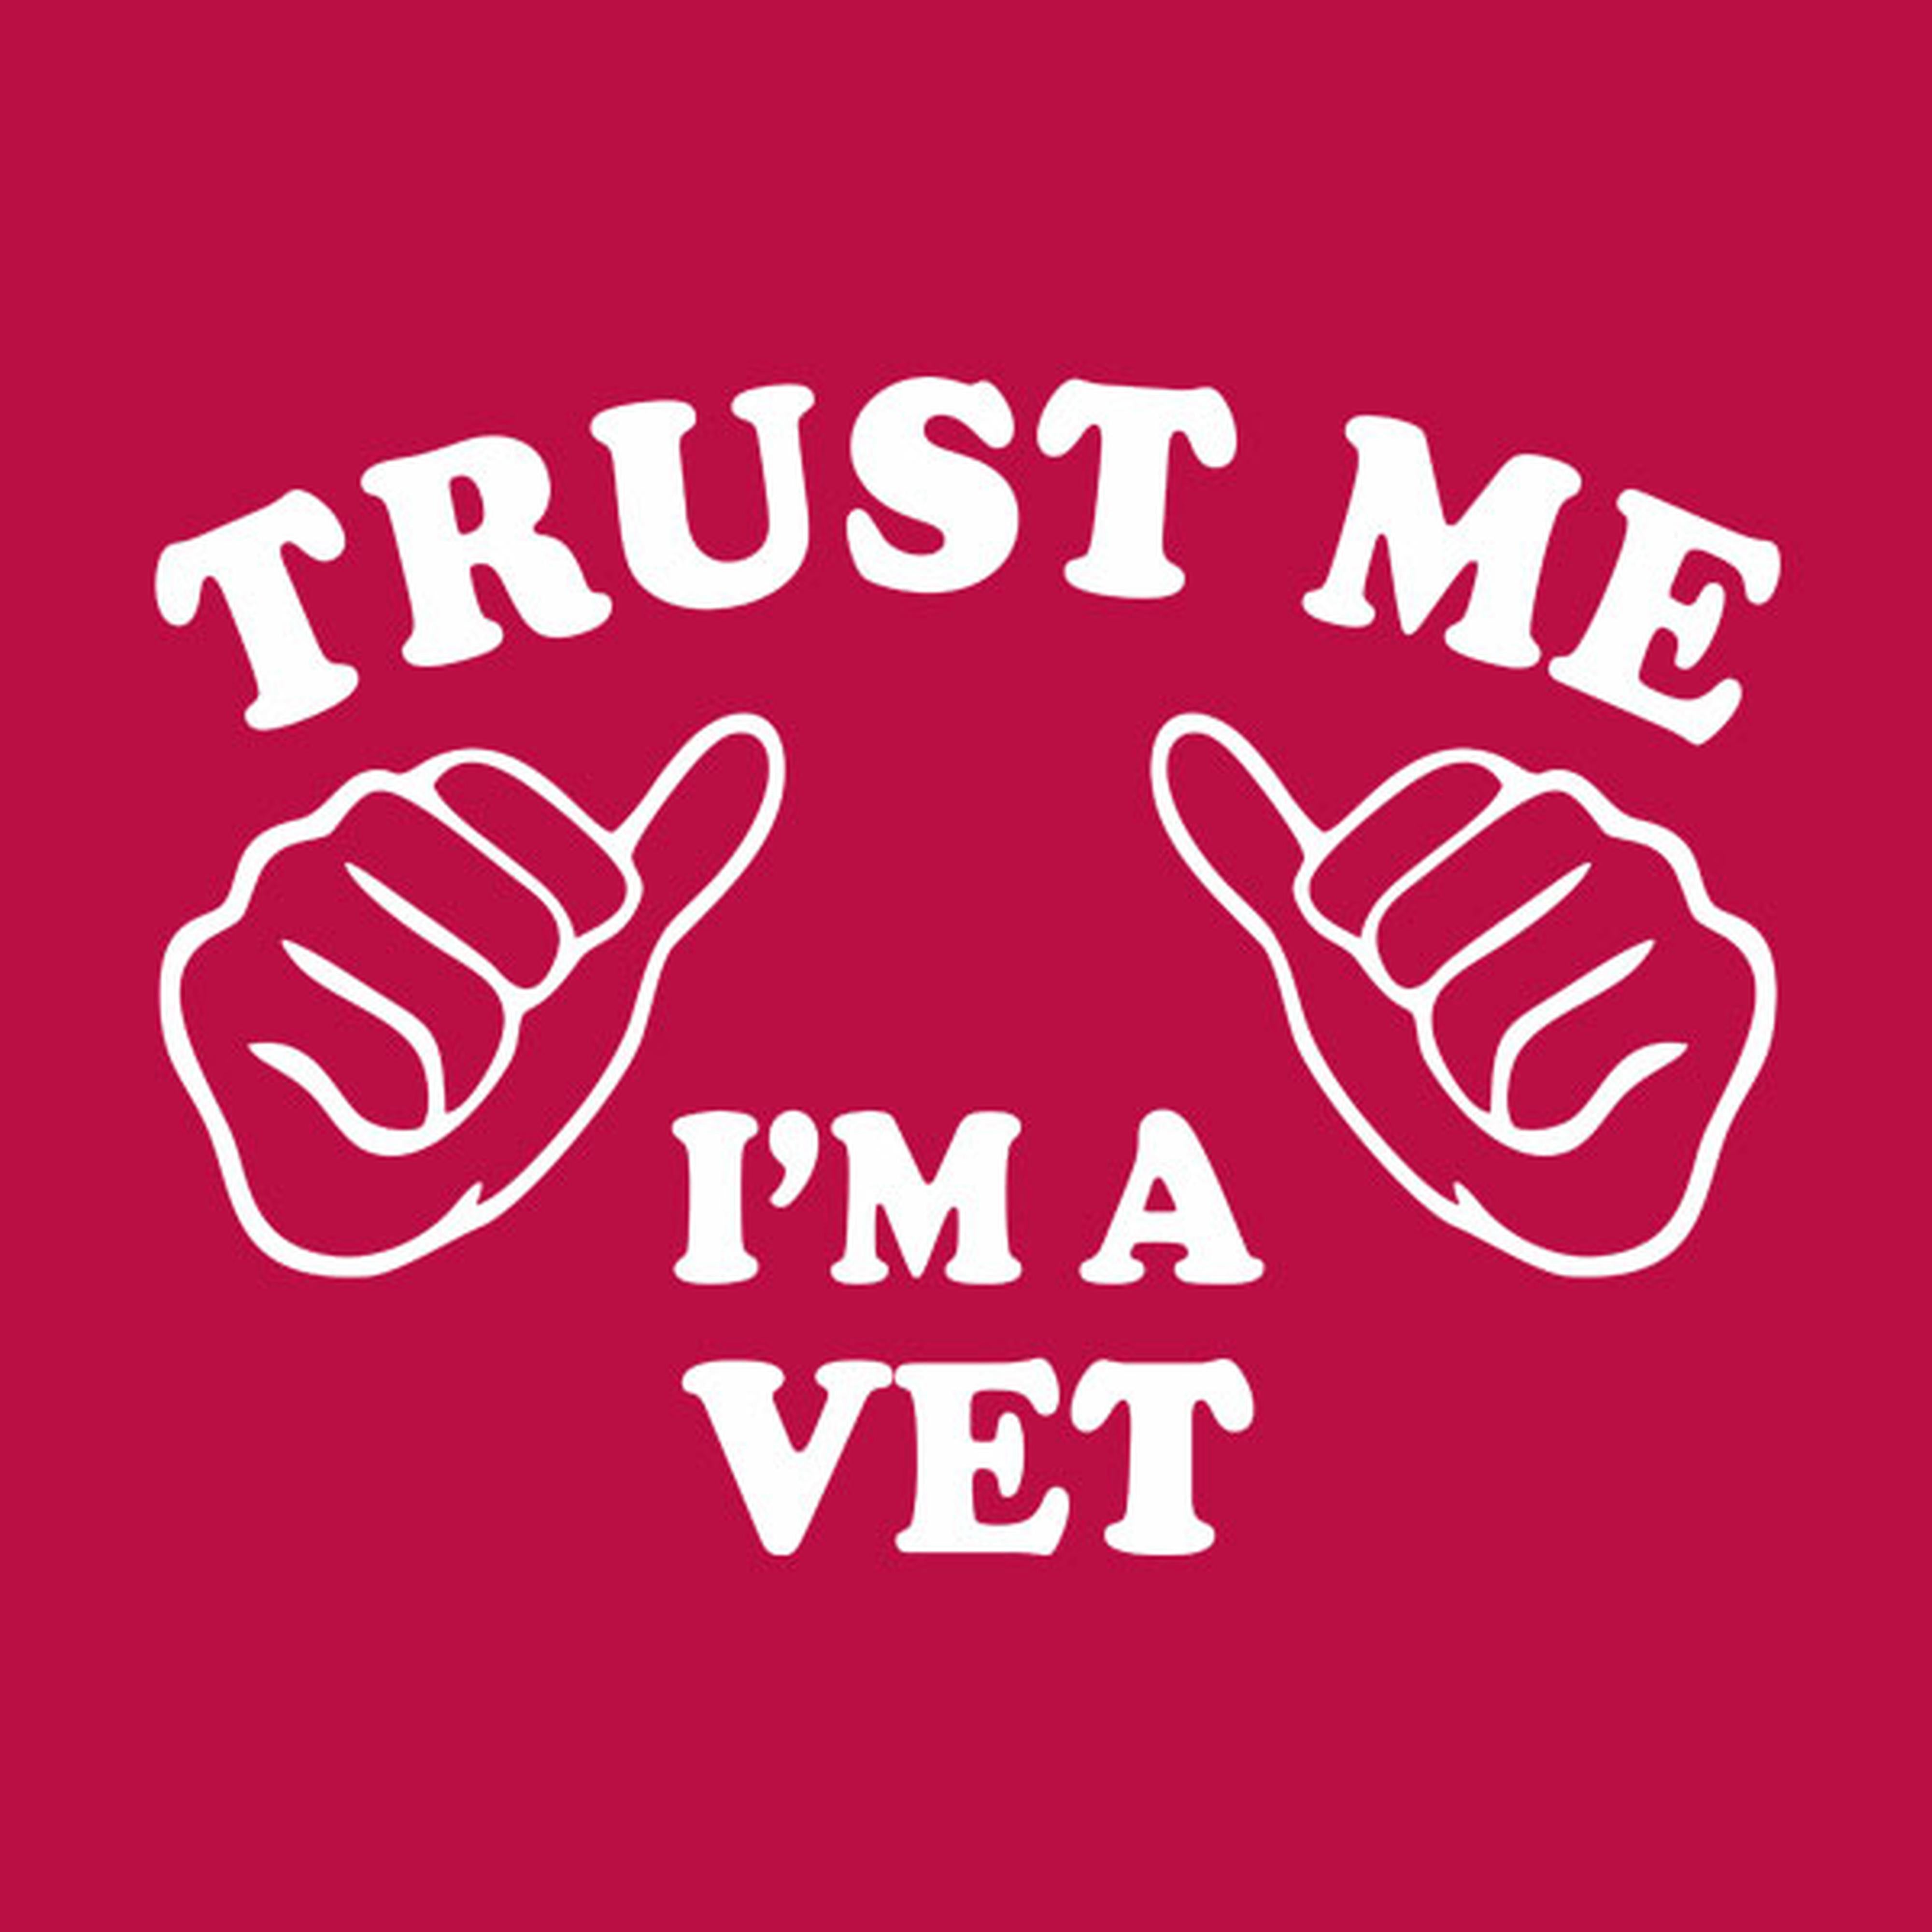 Trust me - I am a vet - T-shirt